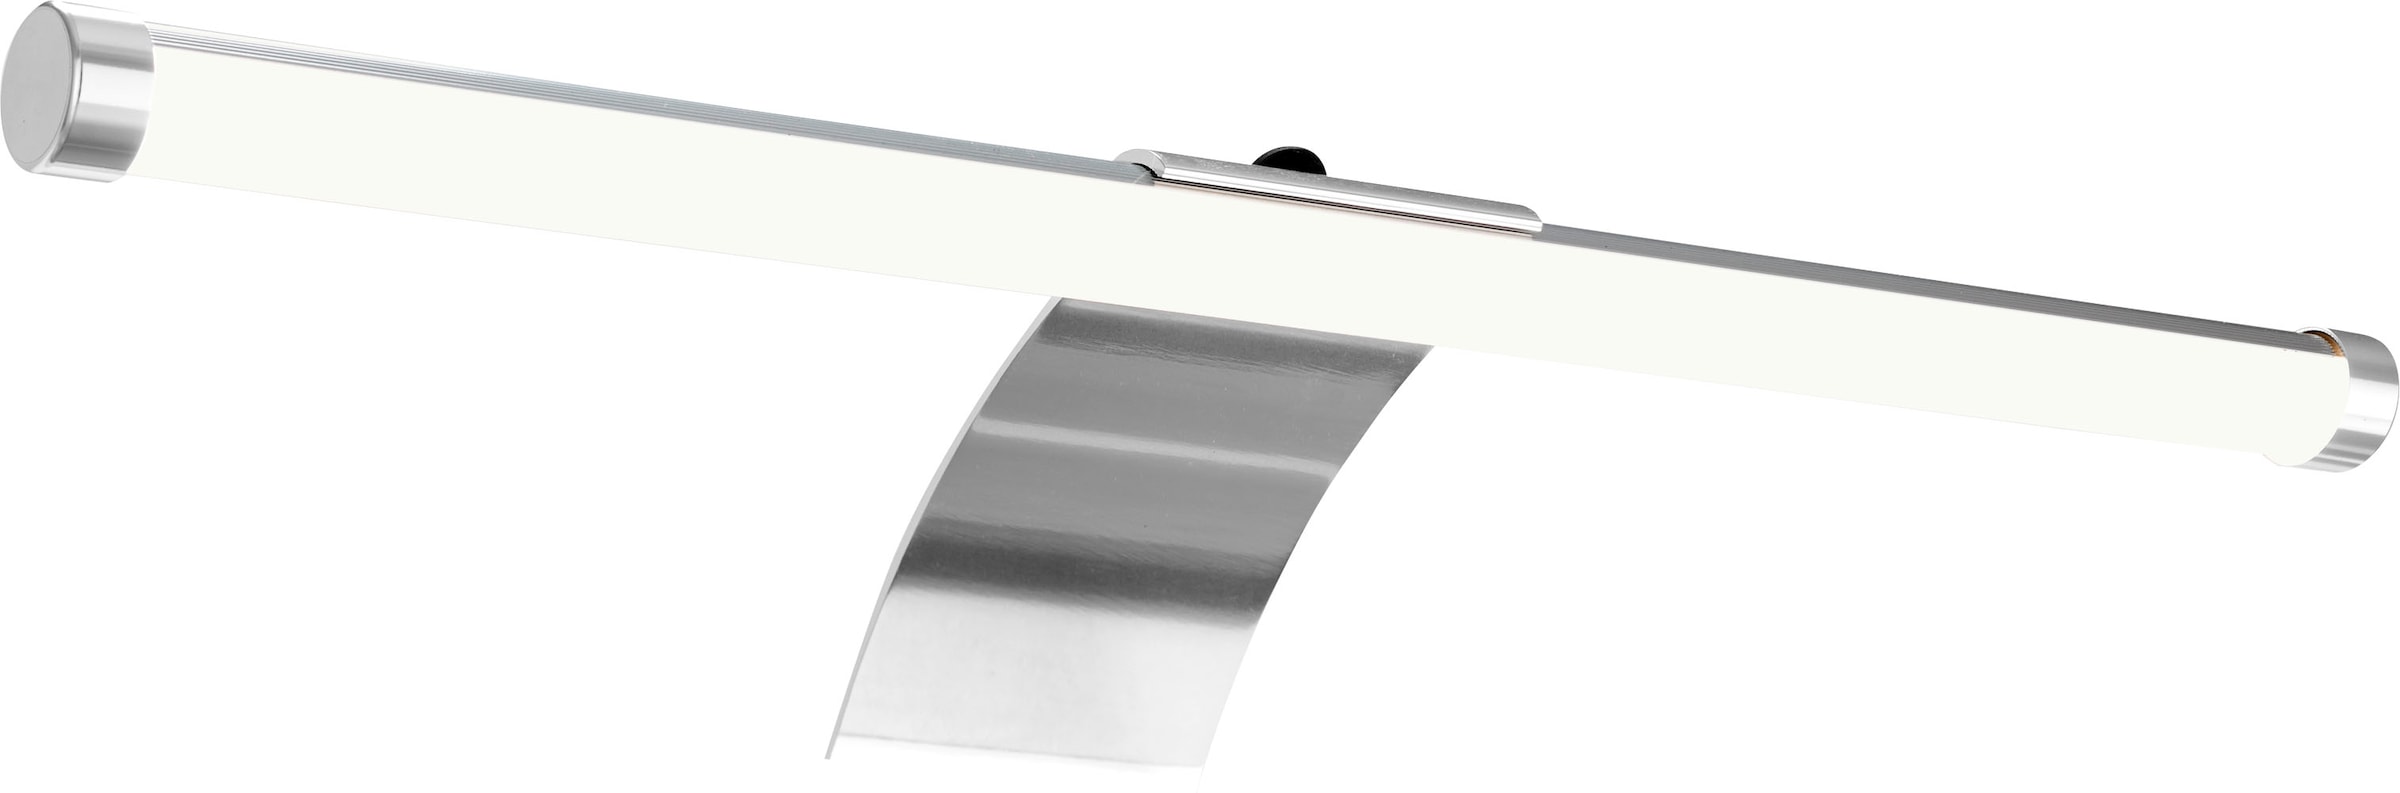 Schildmeyer Spiegelschrank »Lagona«, Breite 70 cm, 3-türig, LED-Beleuchtung, Schalter-/Steckdosenbox